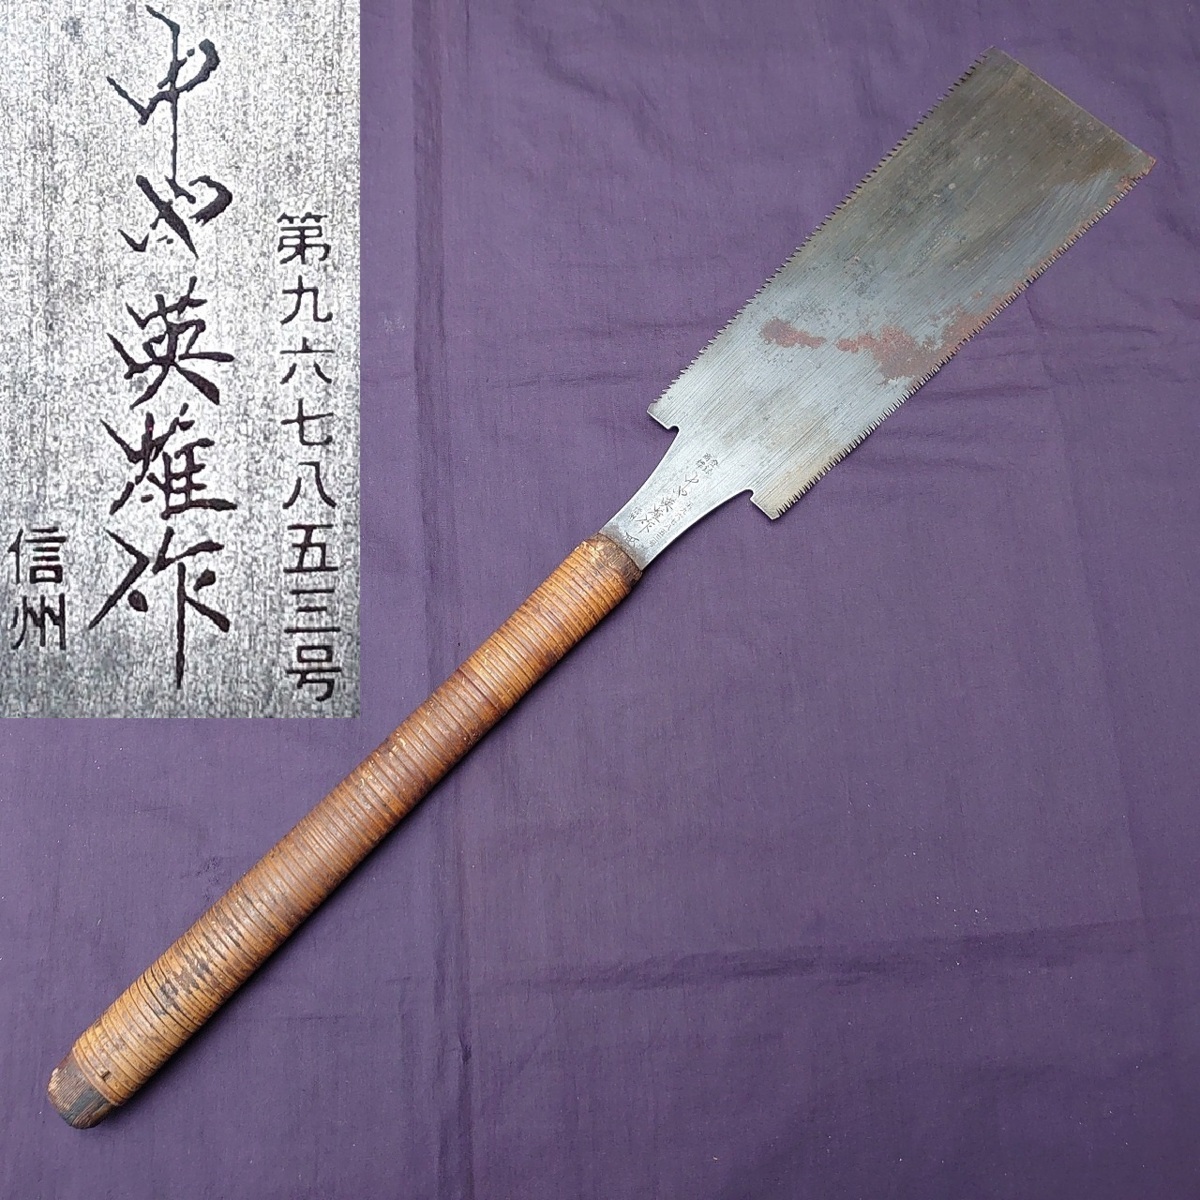 両刃鋸 中や英雄作 信州 刃渡り約252㎜ 古鋸 古道具 のこぎり ノコギリ 大工道具 工具 日本製 6000